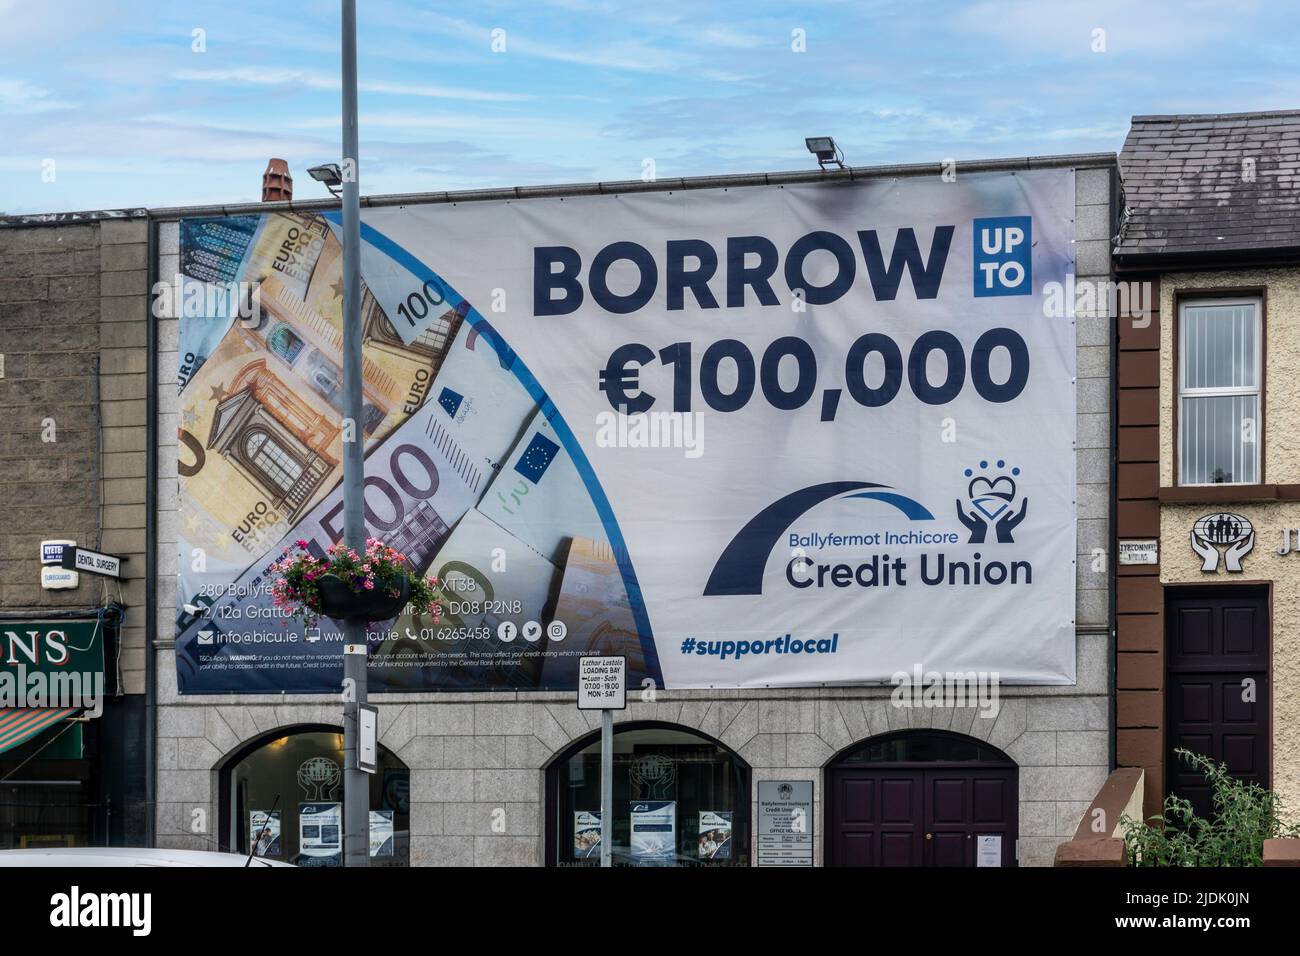 Gli uffici di Ballyfermot/Inchicore Credit Union su Grattan Crescent, Inchicore, Dublino, Irlanda. Offrire prestiti fino a € 100.000. Foto Stock